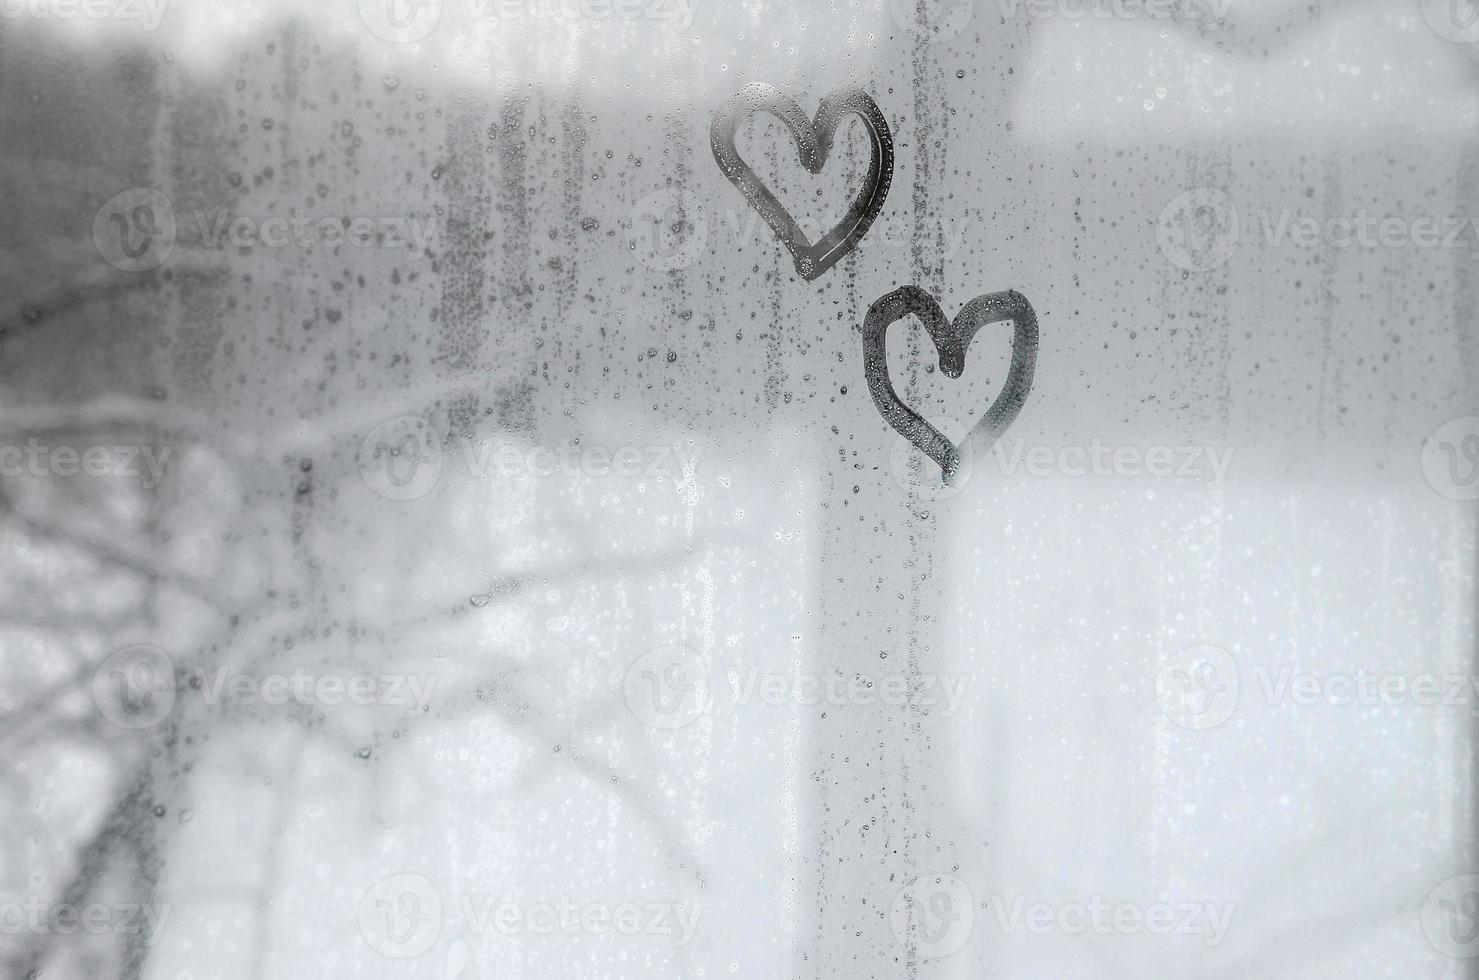 två hjärtan målad på en dimma glas i vinter- foto